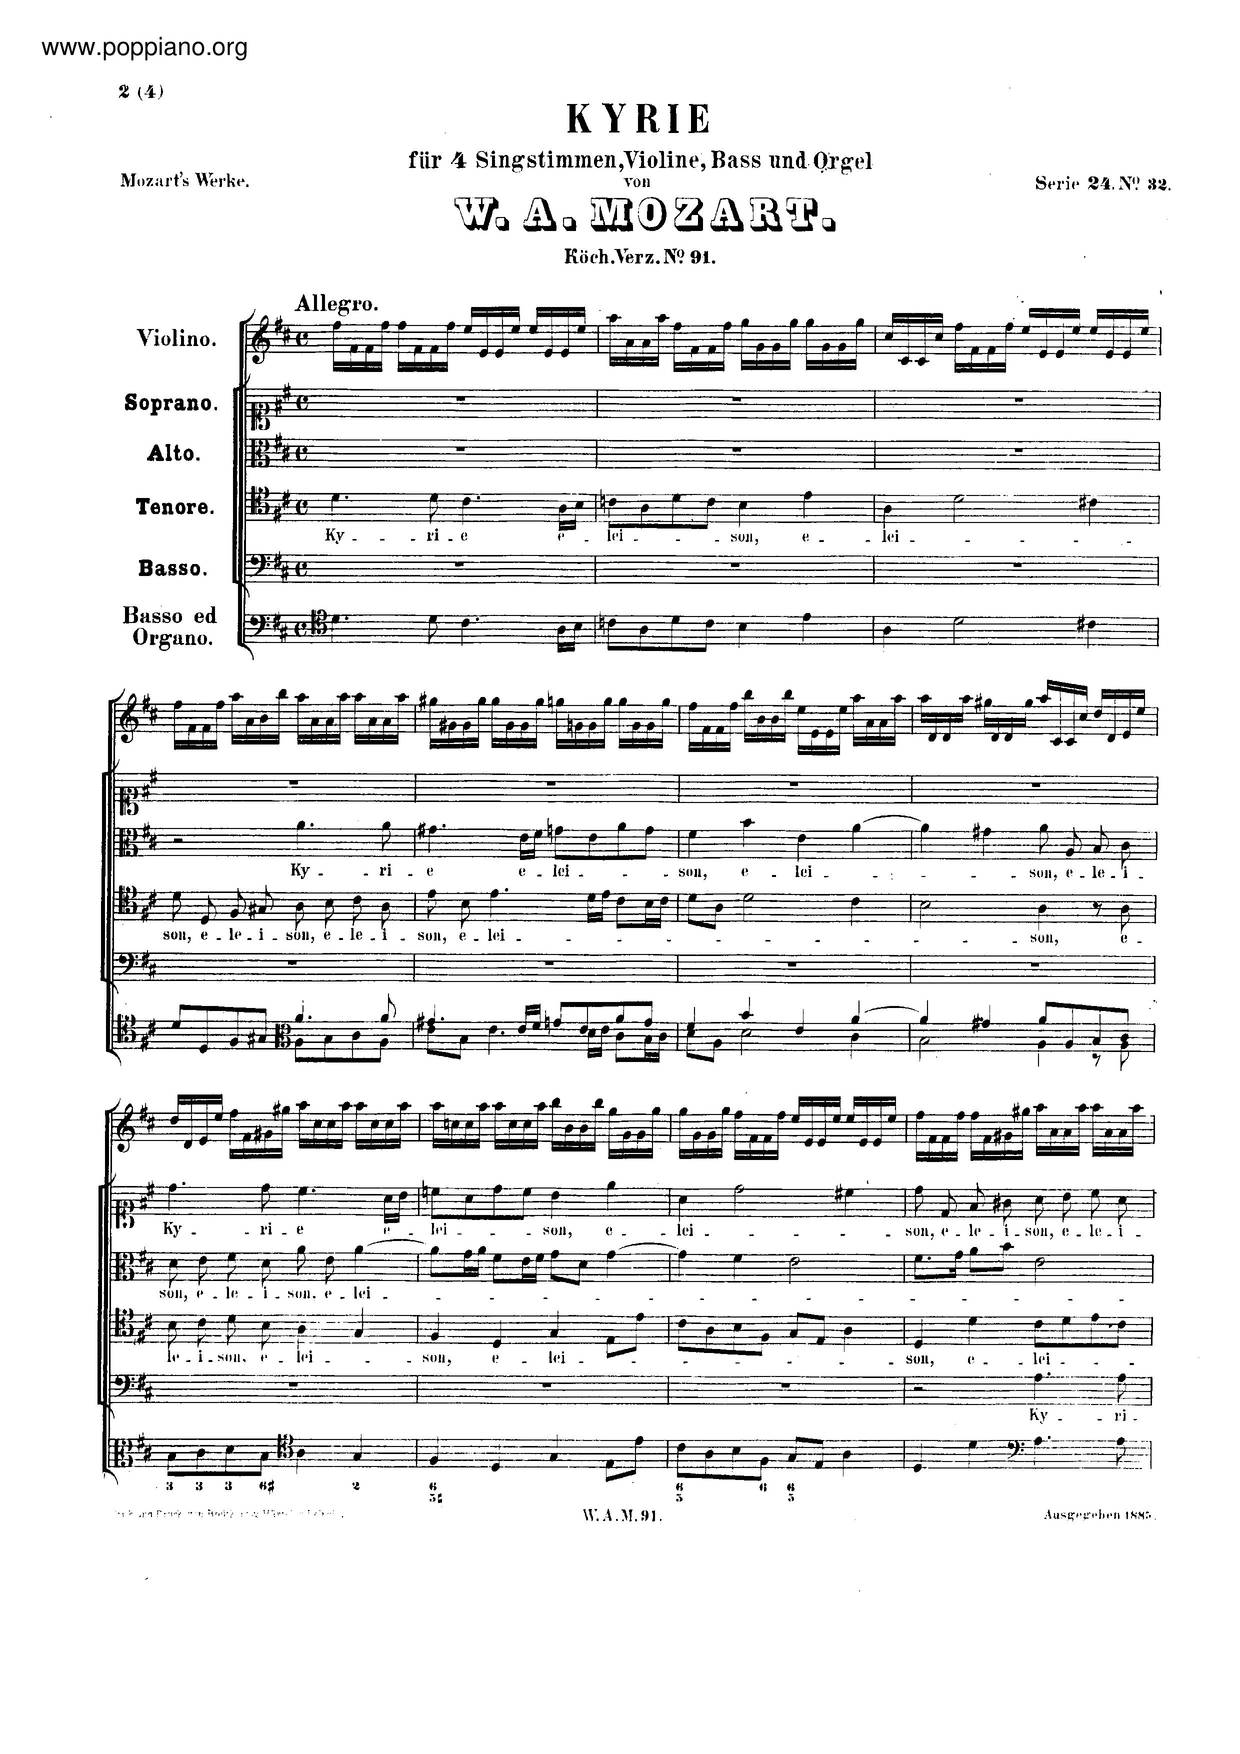 Kyrie In D Major, K. 91/186I琴譜